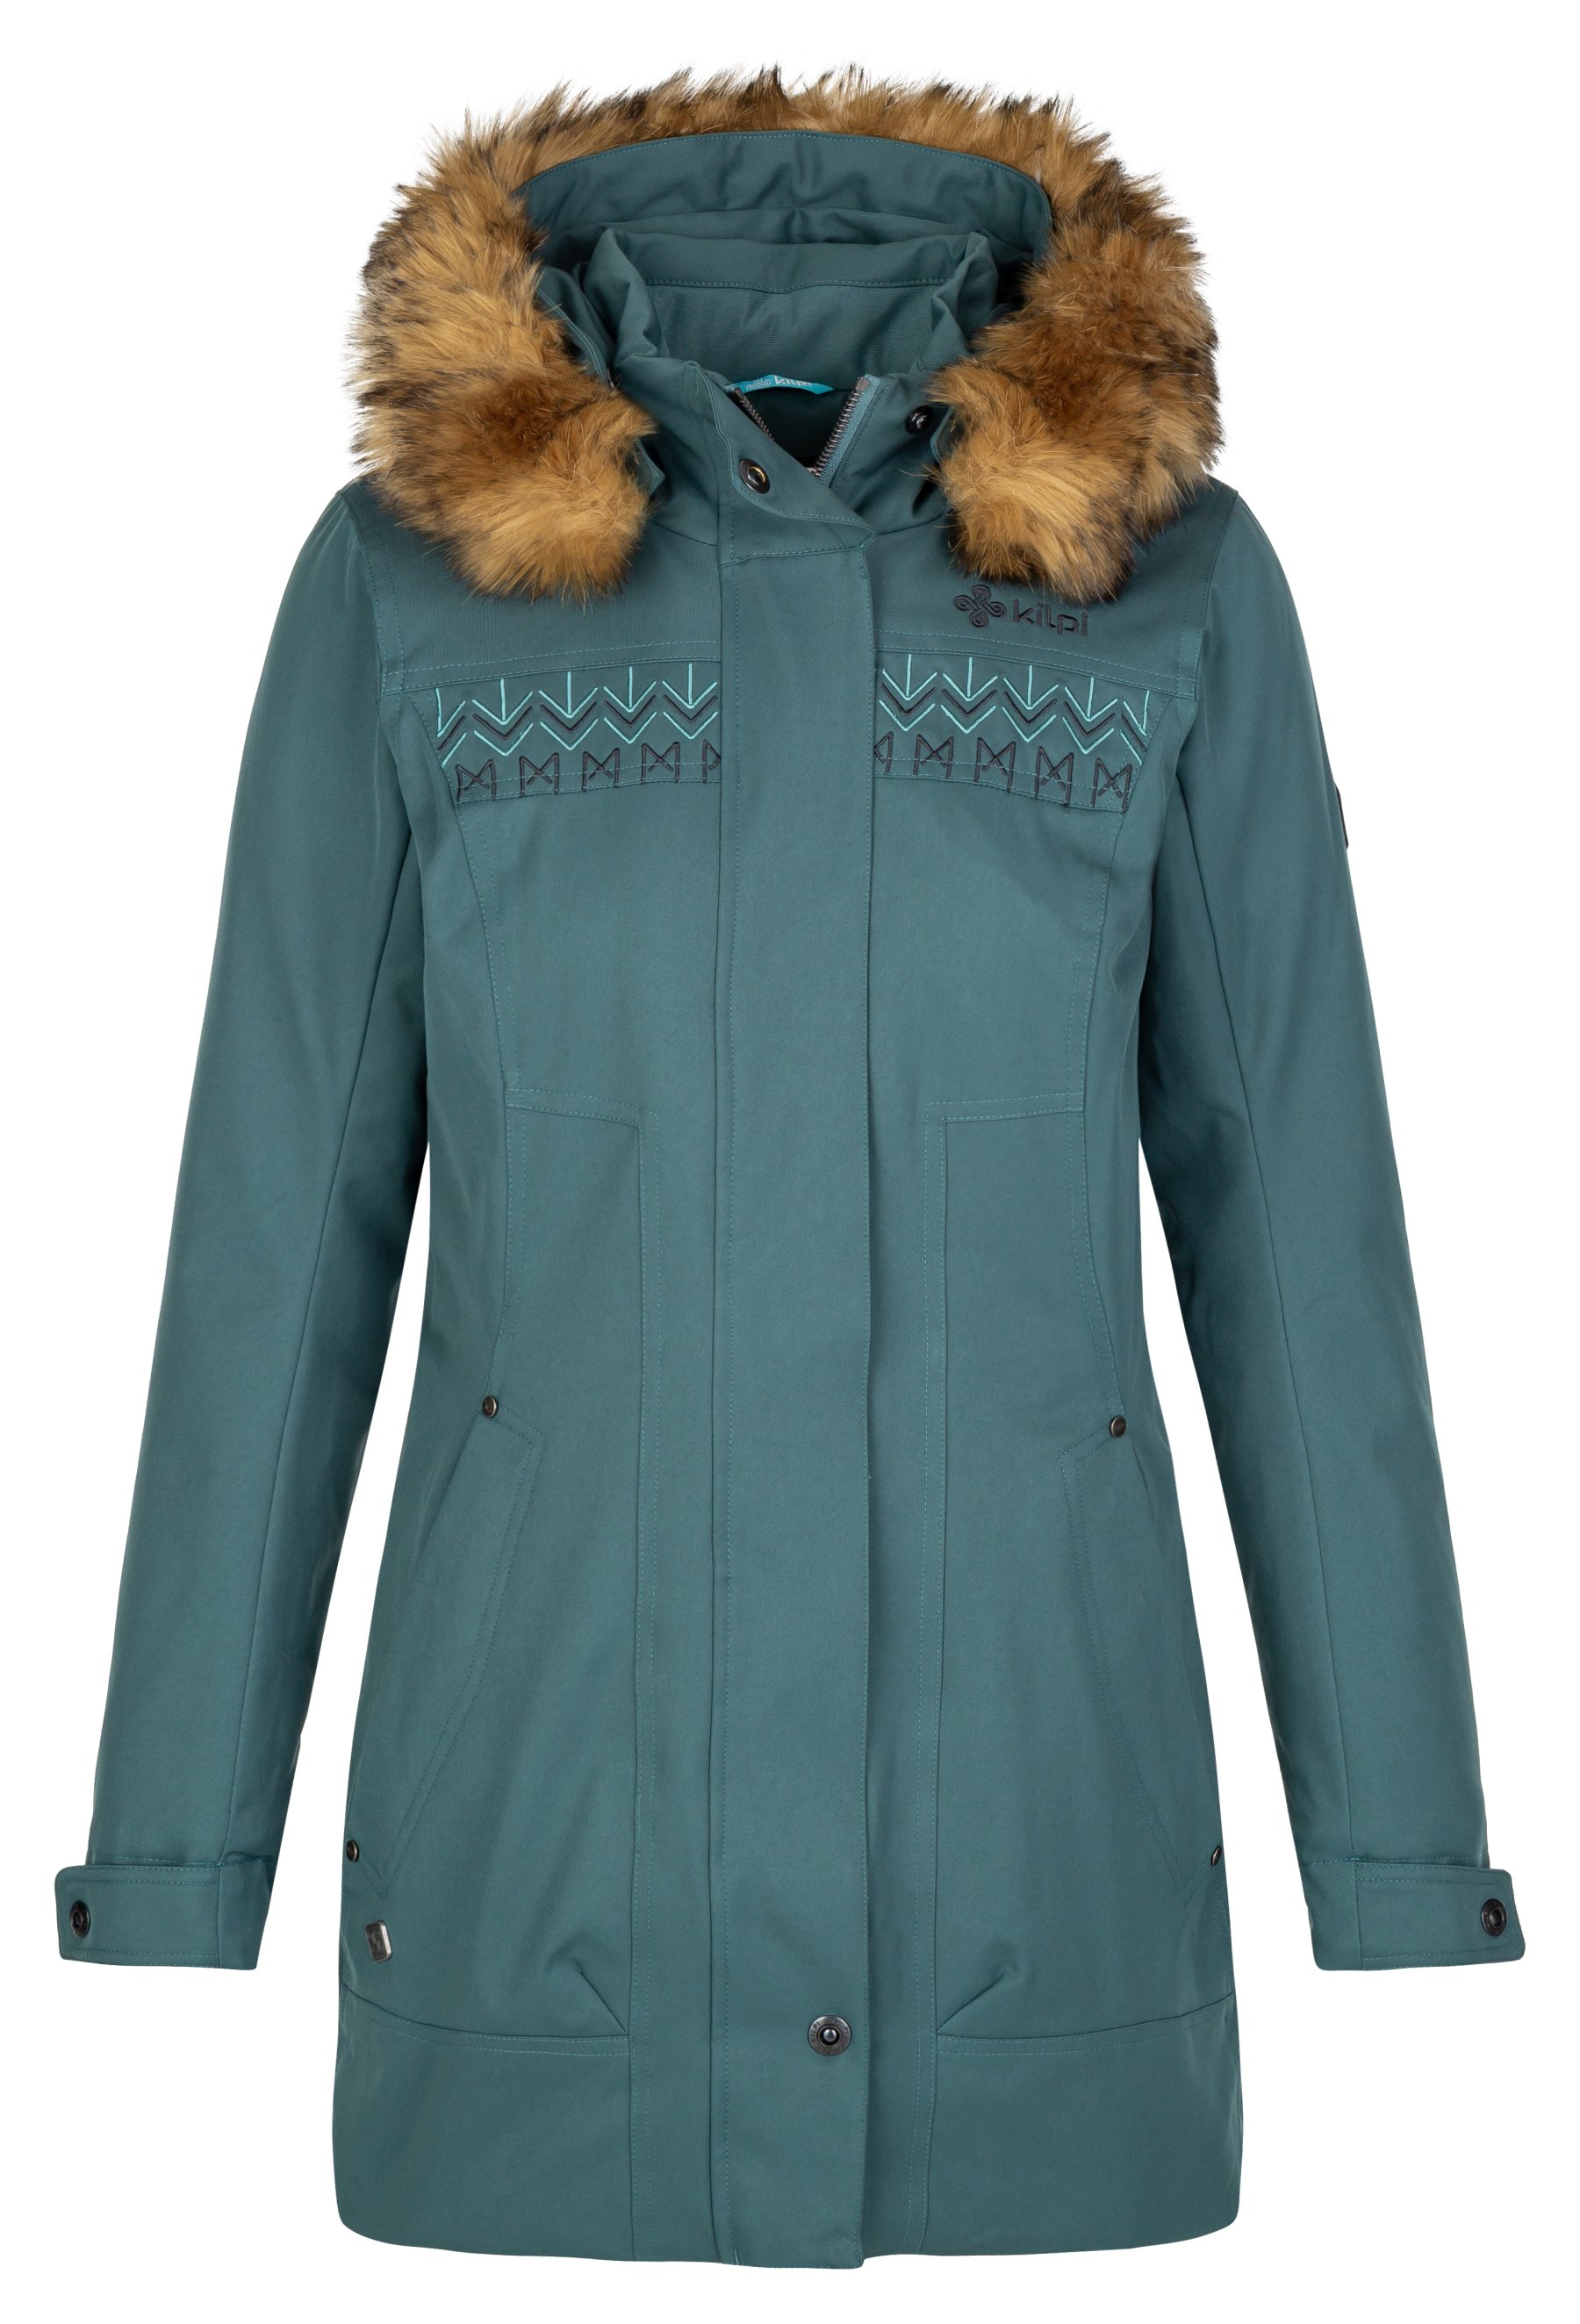 Kilpi dámský zimní kabát Peru-W Barva: tmavě zelená, Velikost: 34